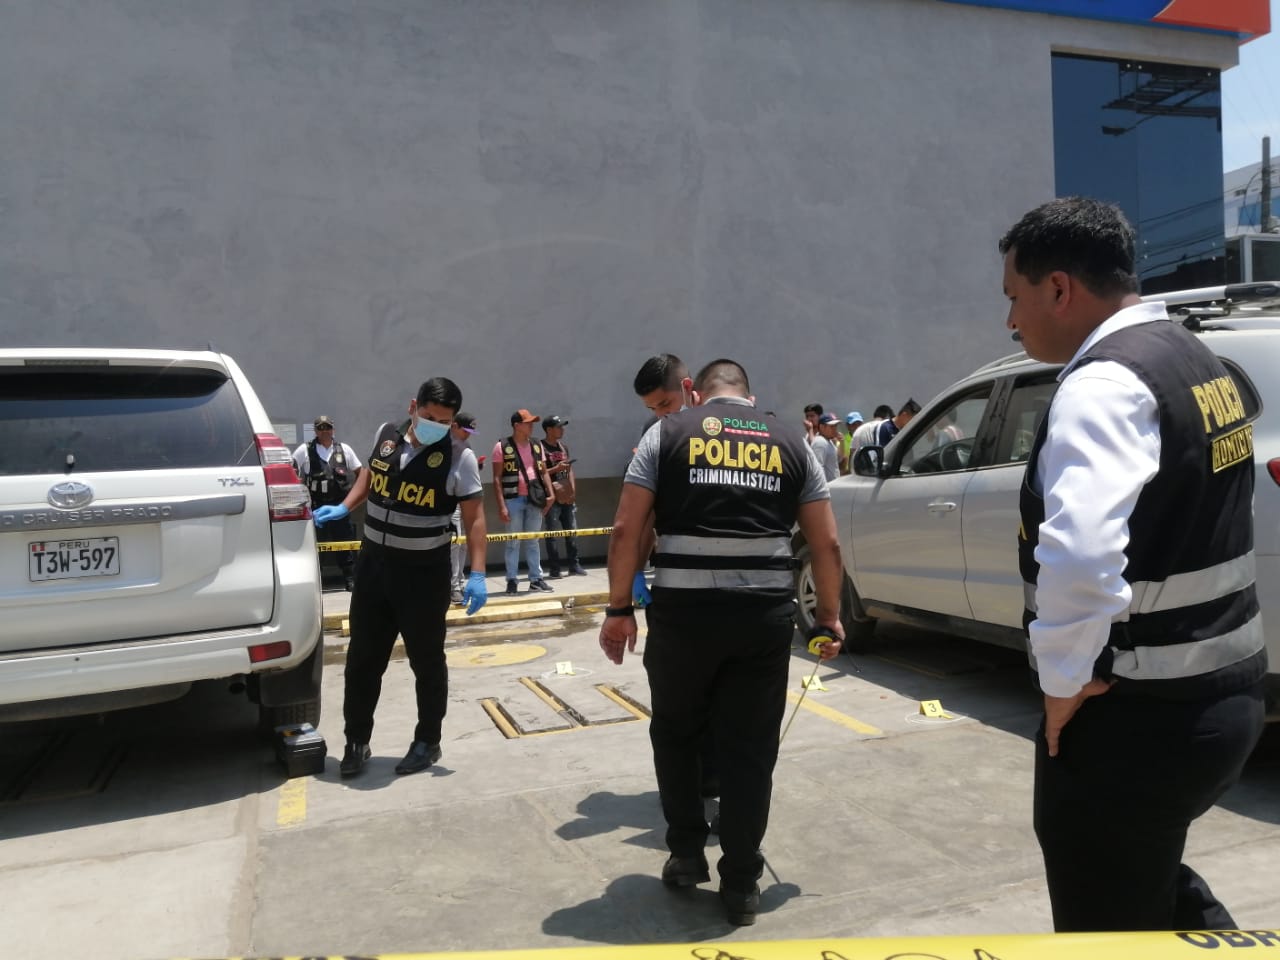 La Polica est tras los pasos de los criminales de Marco Antonio Gutirrez.